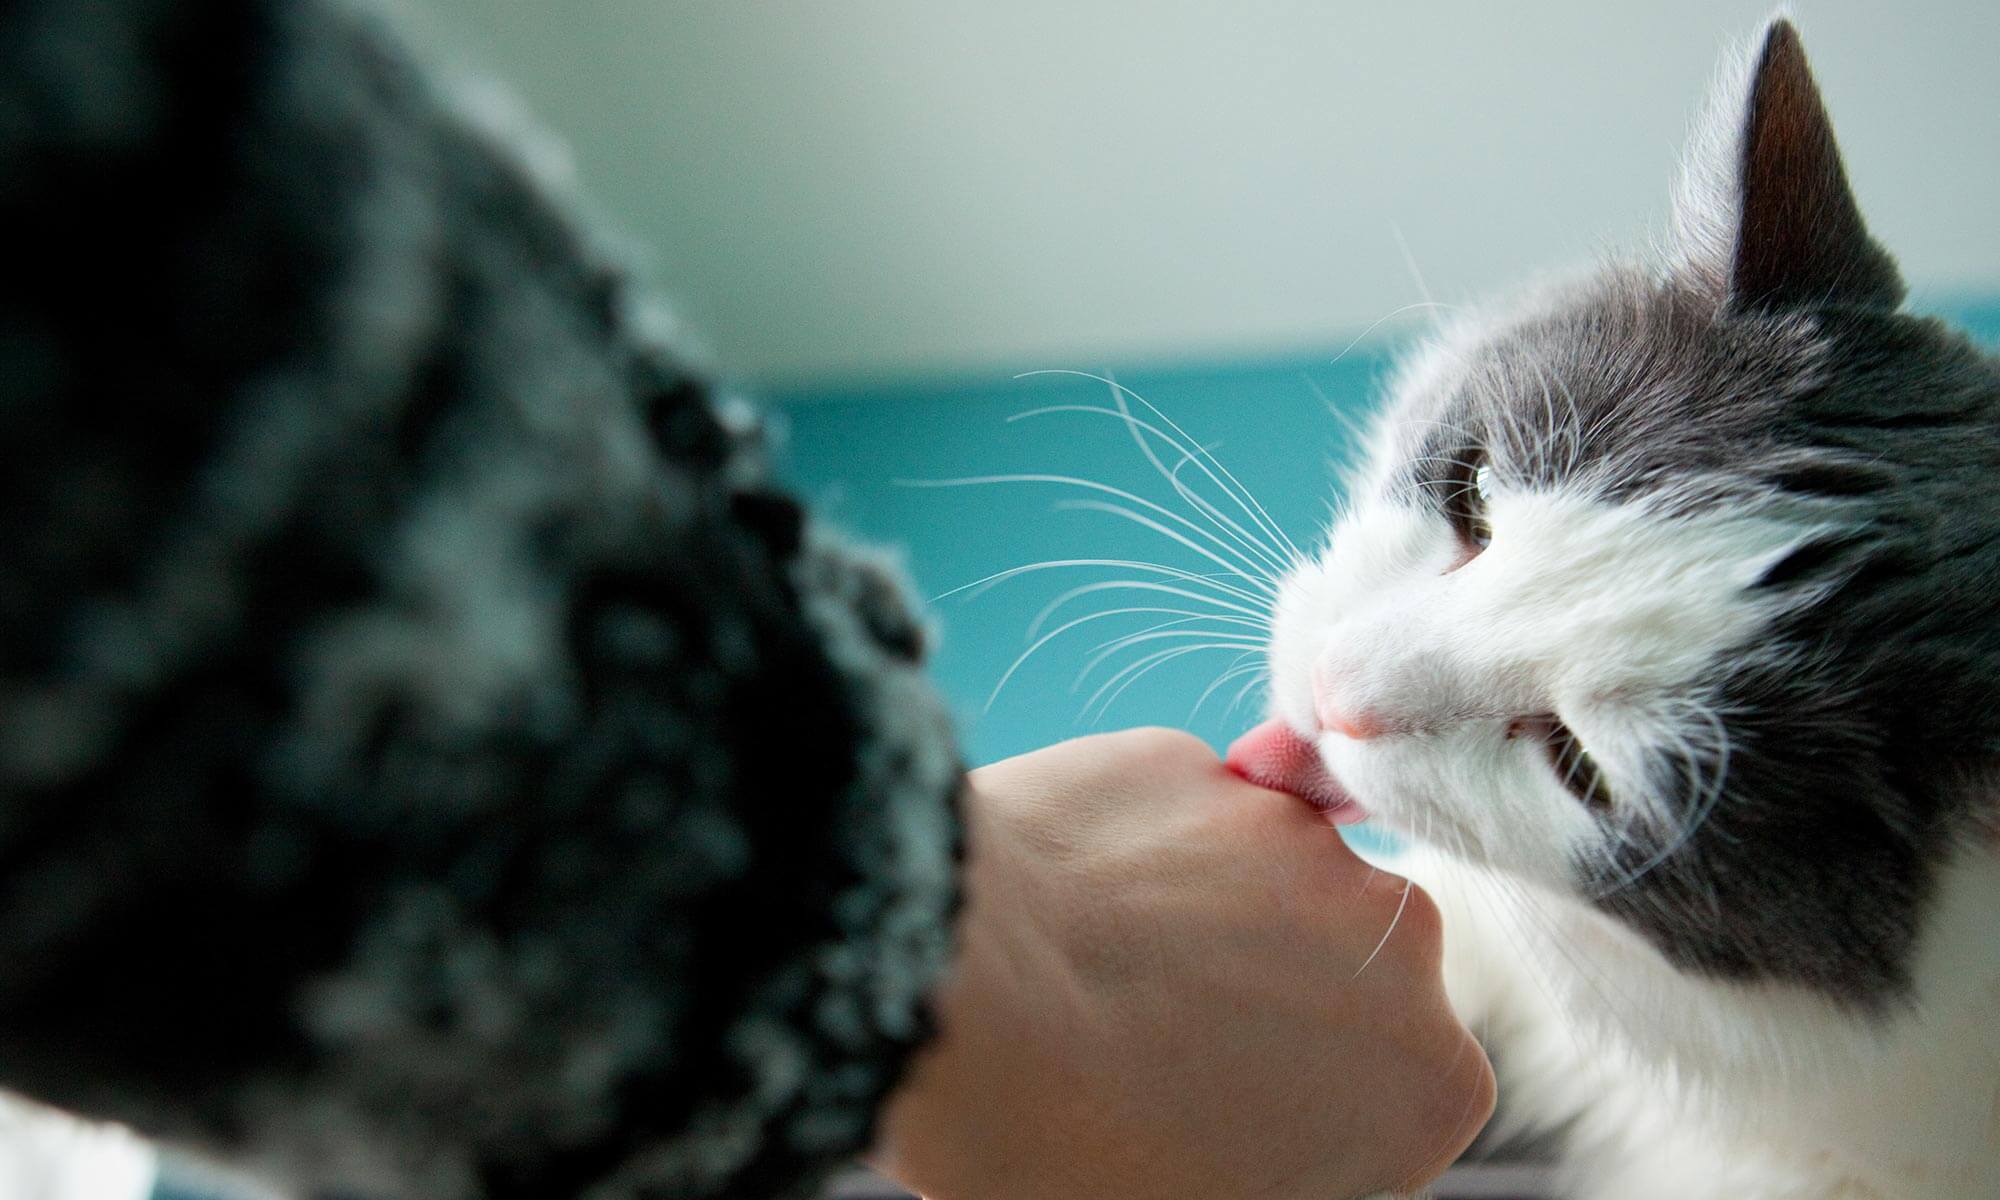 A cat licking a hand